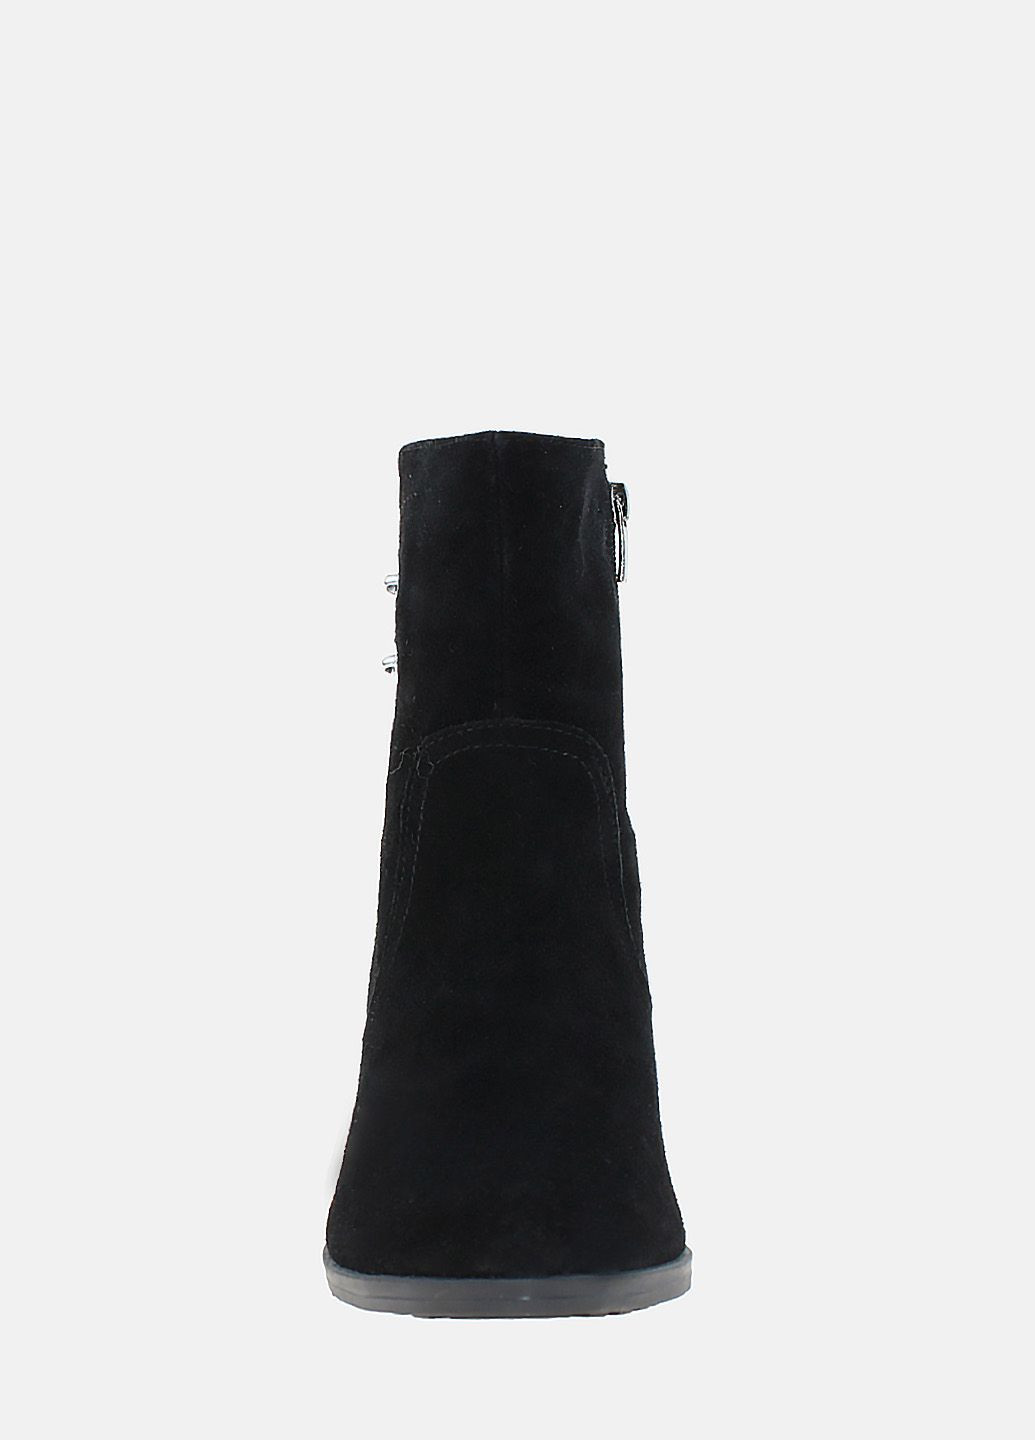 Зимние ботинки ro1547-11 черный Olevit из натуральной замши